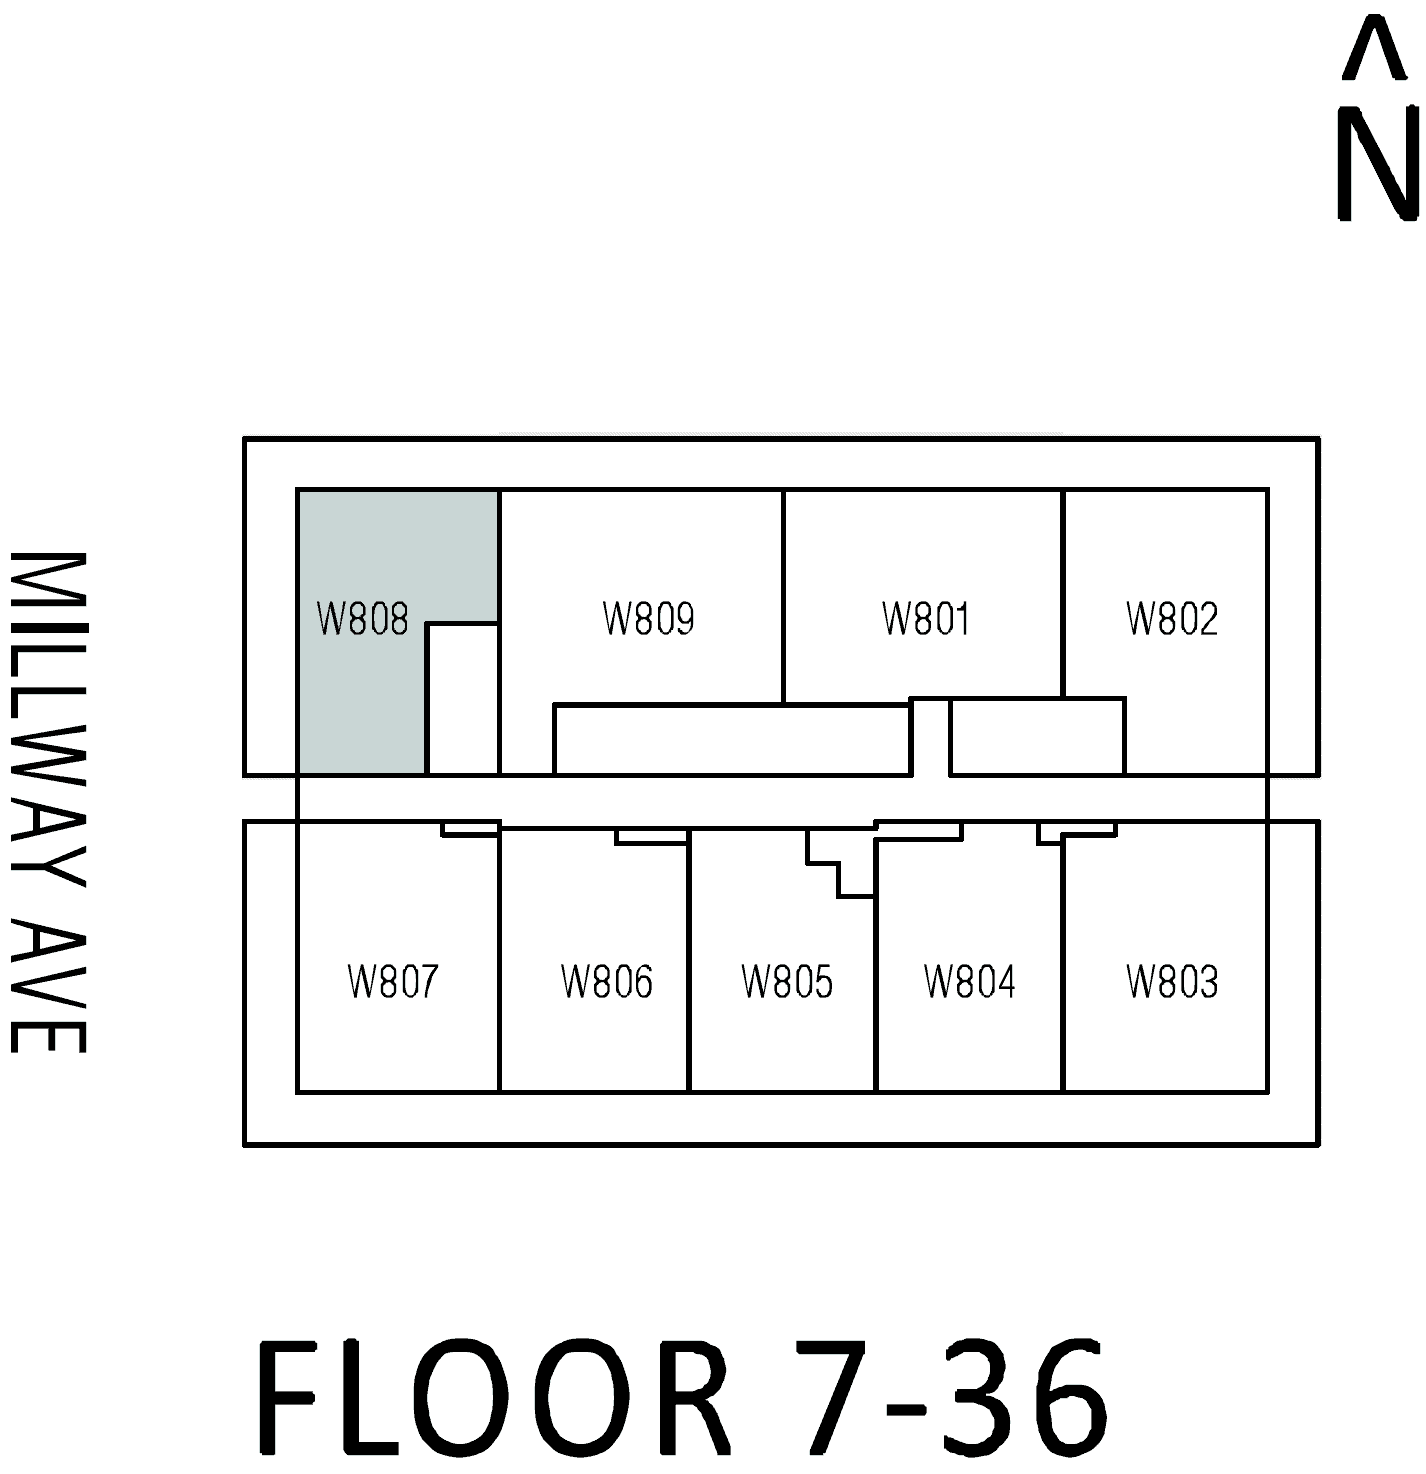 W08 floor plan